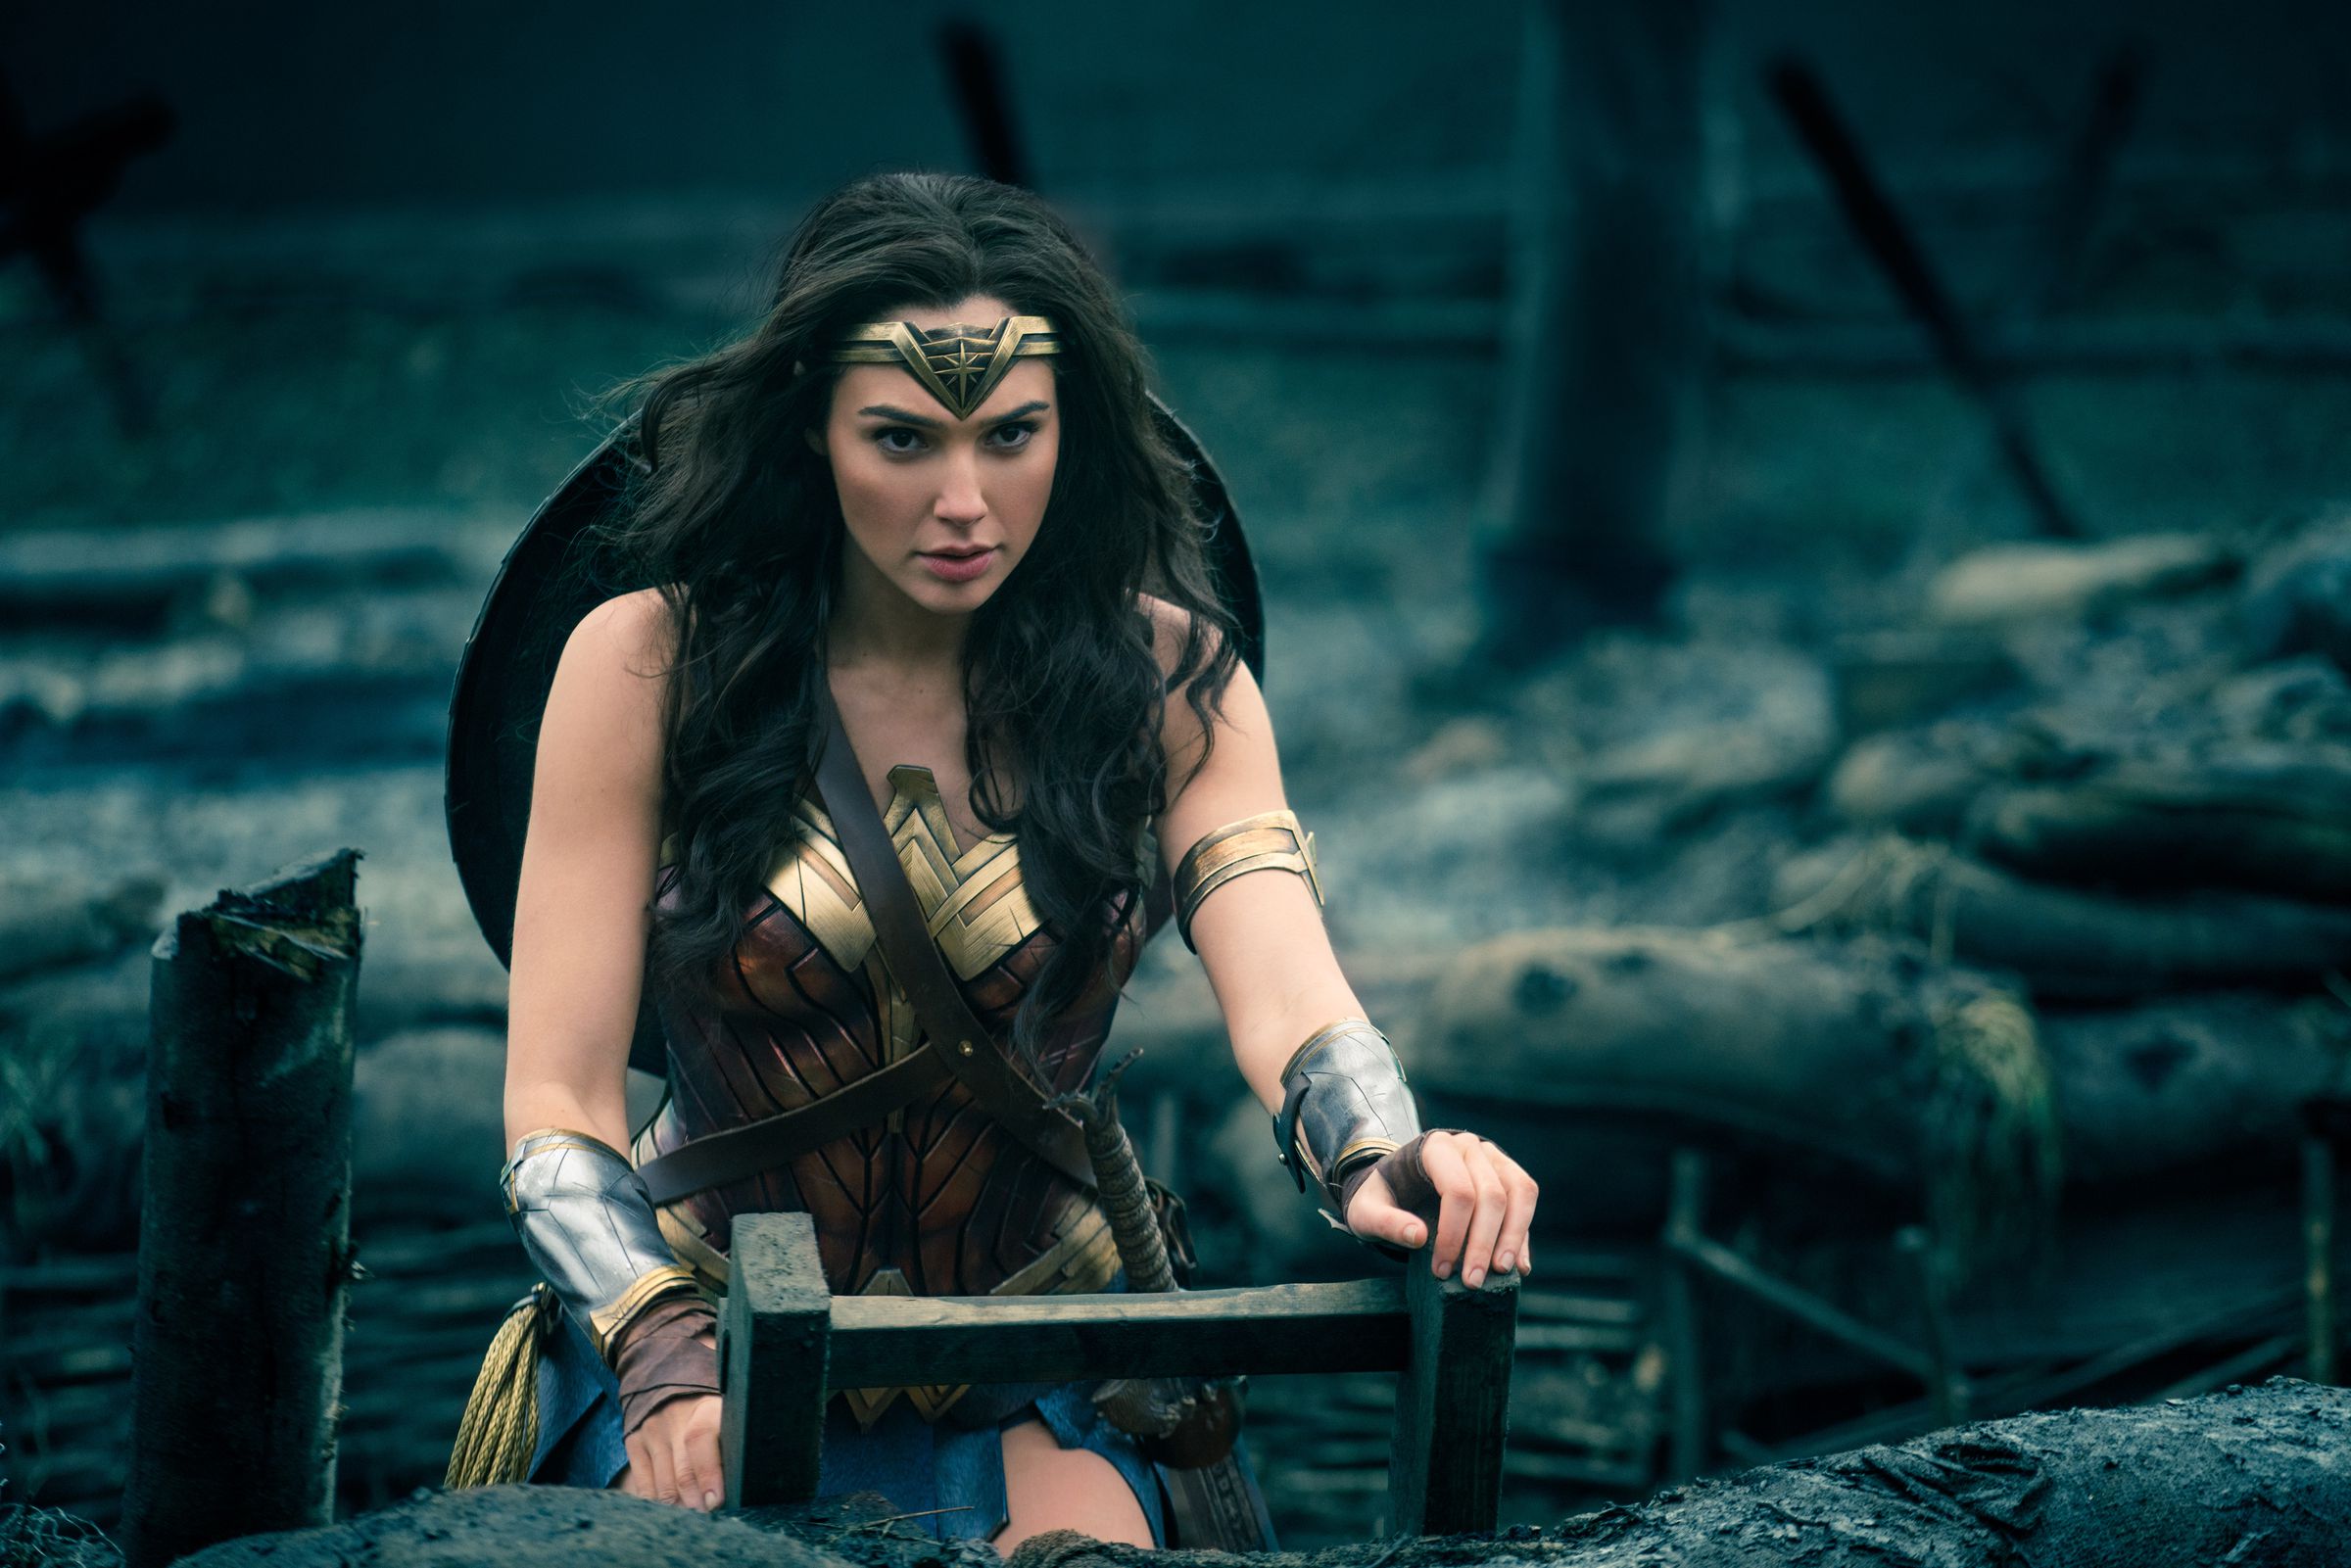 Mediaversity gives Wonder Woman a B rating.